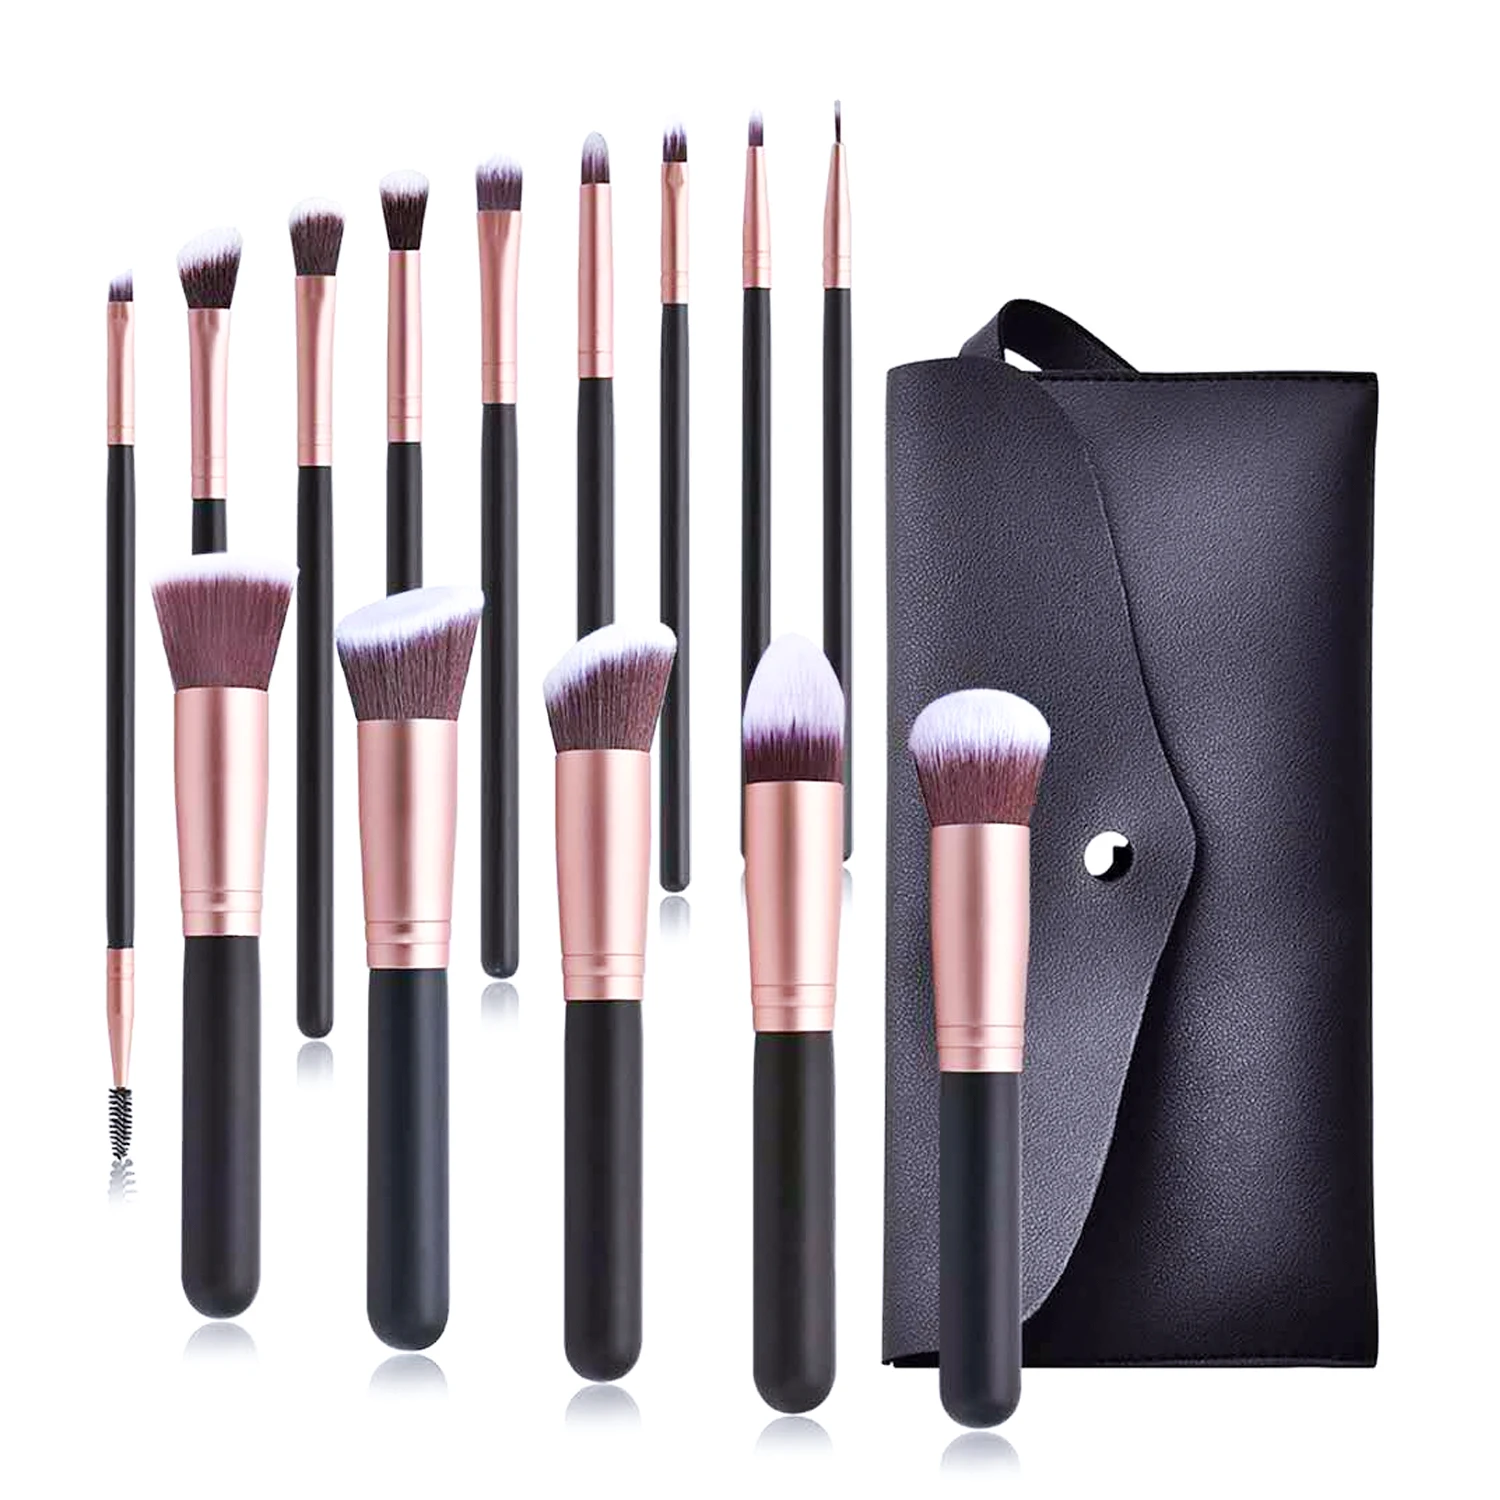 14pcs makeup brushes set for foundation powder blusher lip eyebrow eyeshadow eyeliner brush cosmetic tool